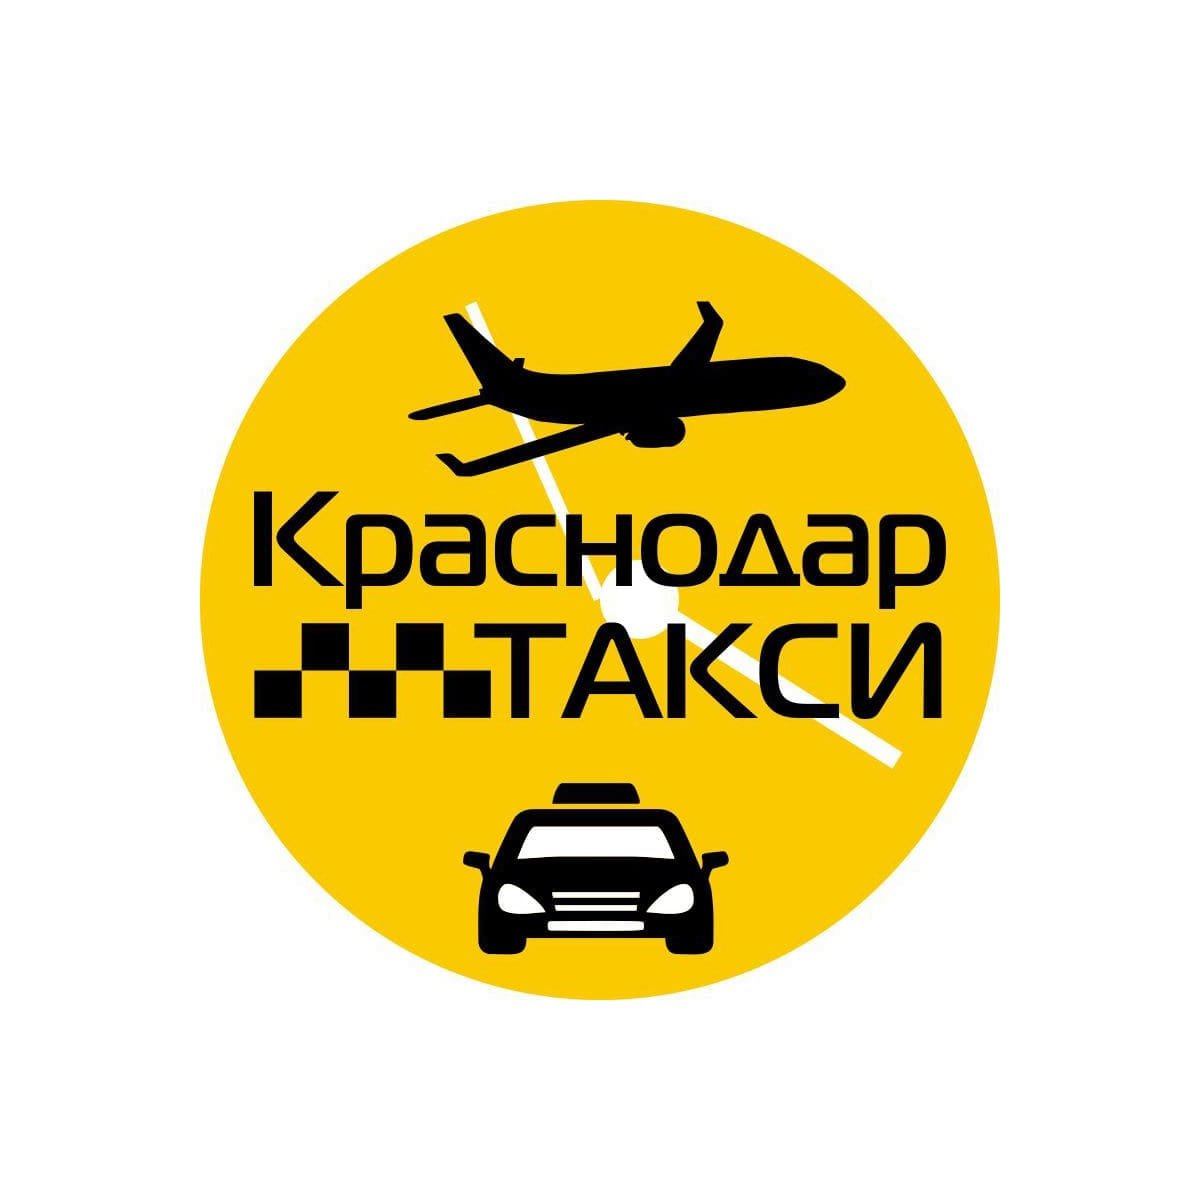 Сколько такси в краснодаре. Такси Краснодар. Трансфер Краснодар такси. Номер такси в Краснодаре. Номер таксиста в Краснодаре.